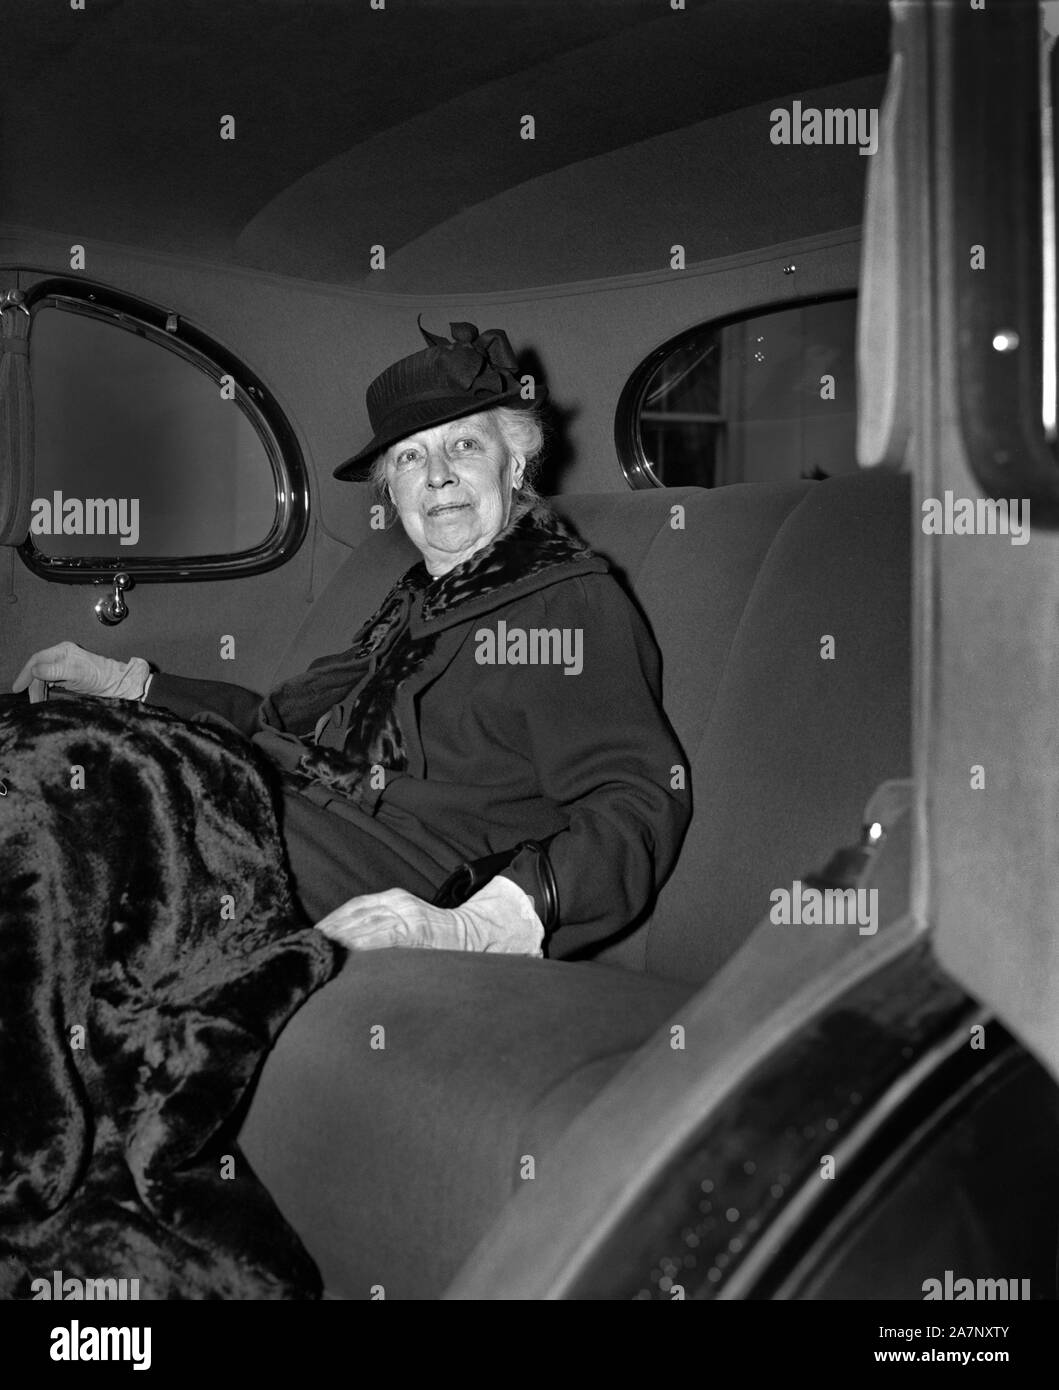 L'ancienne Première Dame Helen Herron Taft au siège arrière de voiture après visite avec le président américain Franklin Roosevelt, Washington, D.C., USA, photo de Harris & Ewing, Décembre 1938 Banque D'Images